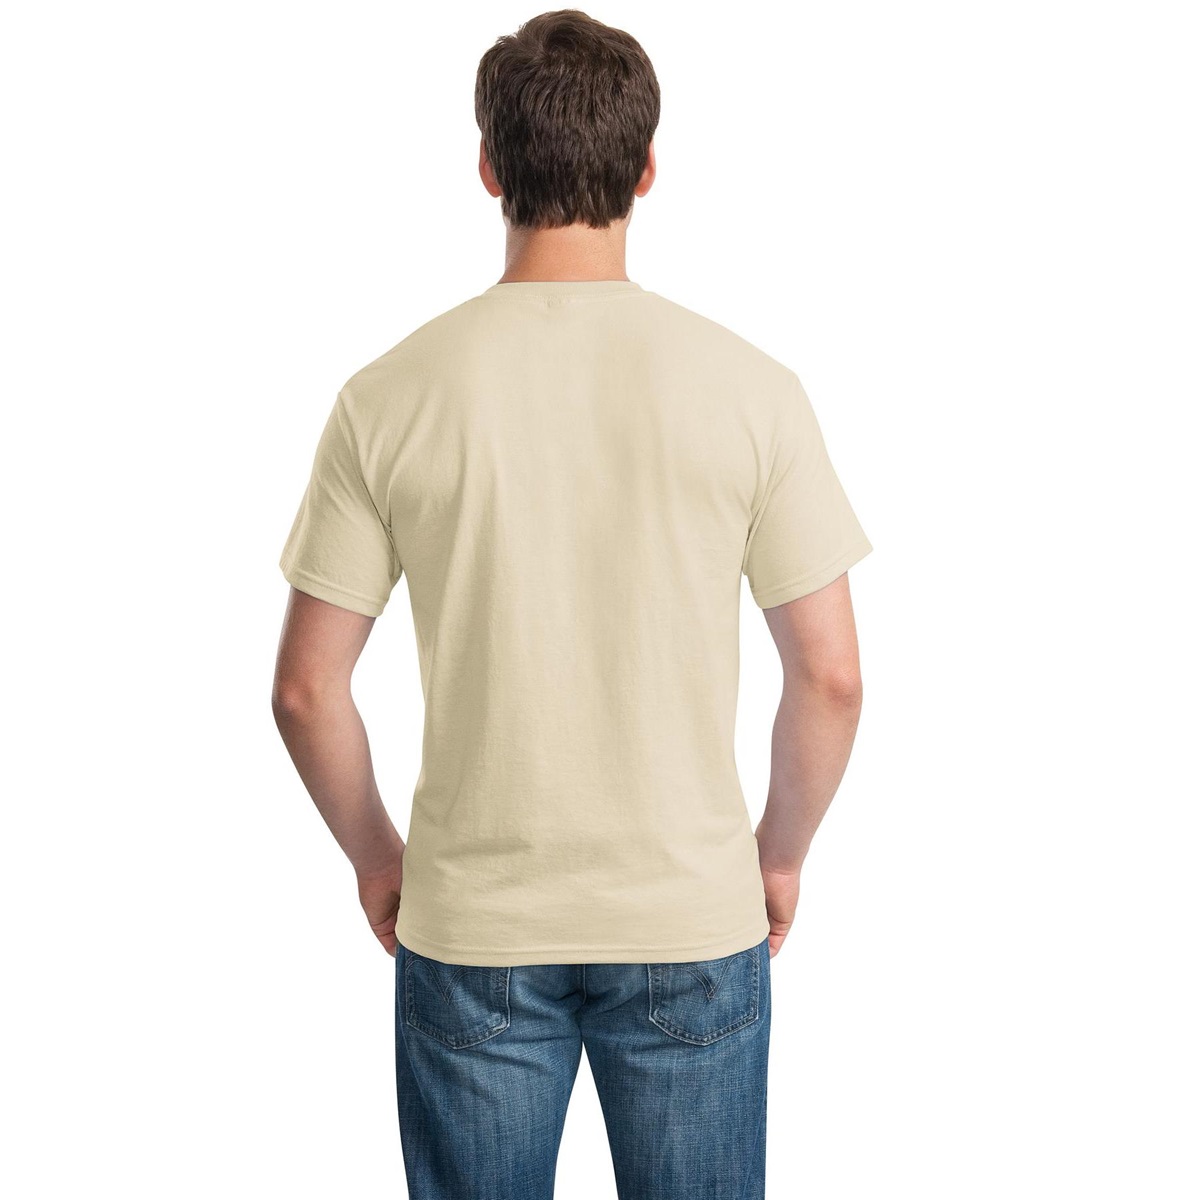 Gildan 8000 DryBlend T-Shirt - Sand | FullSource.com